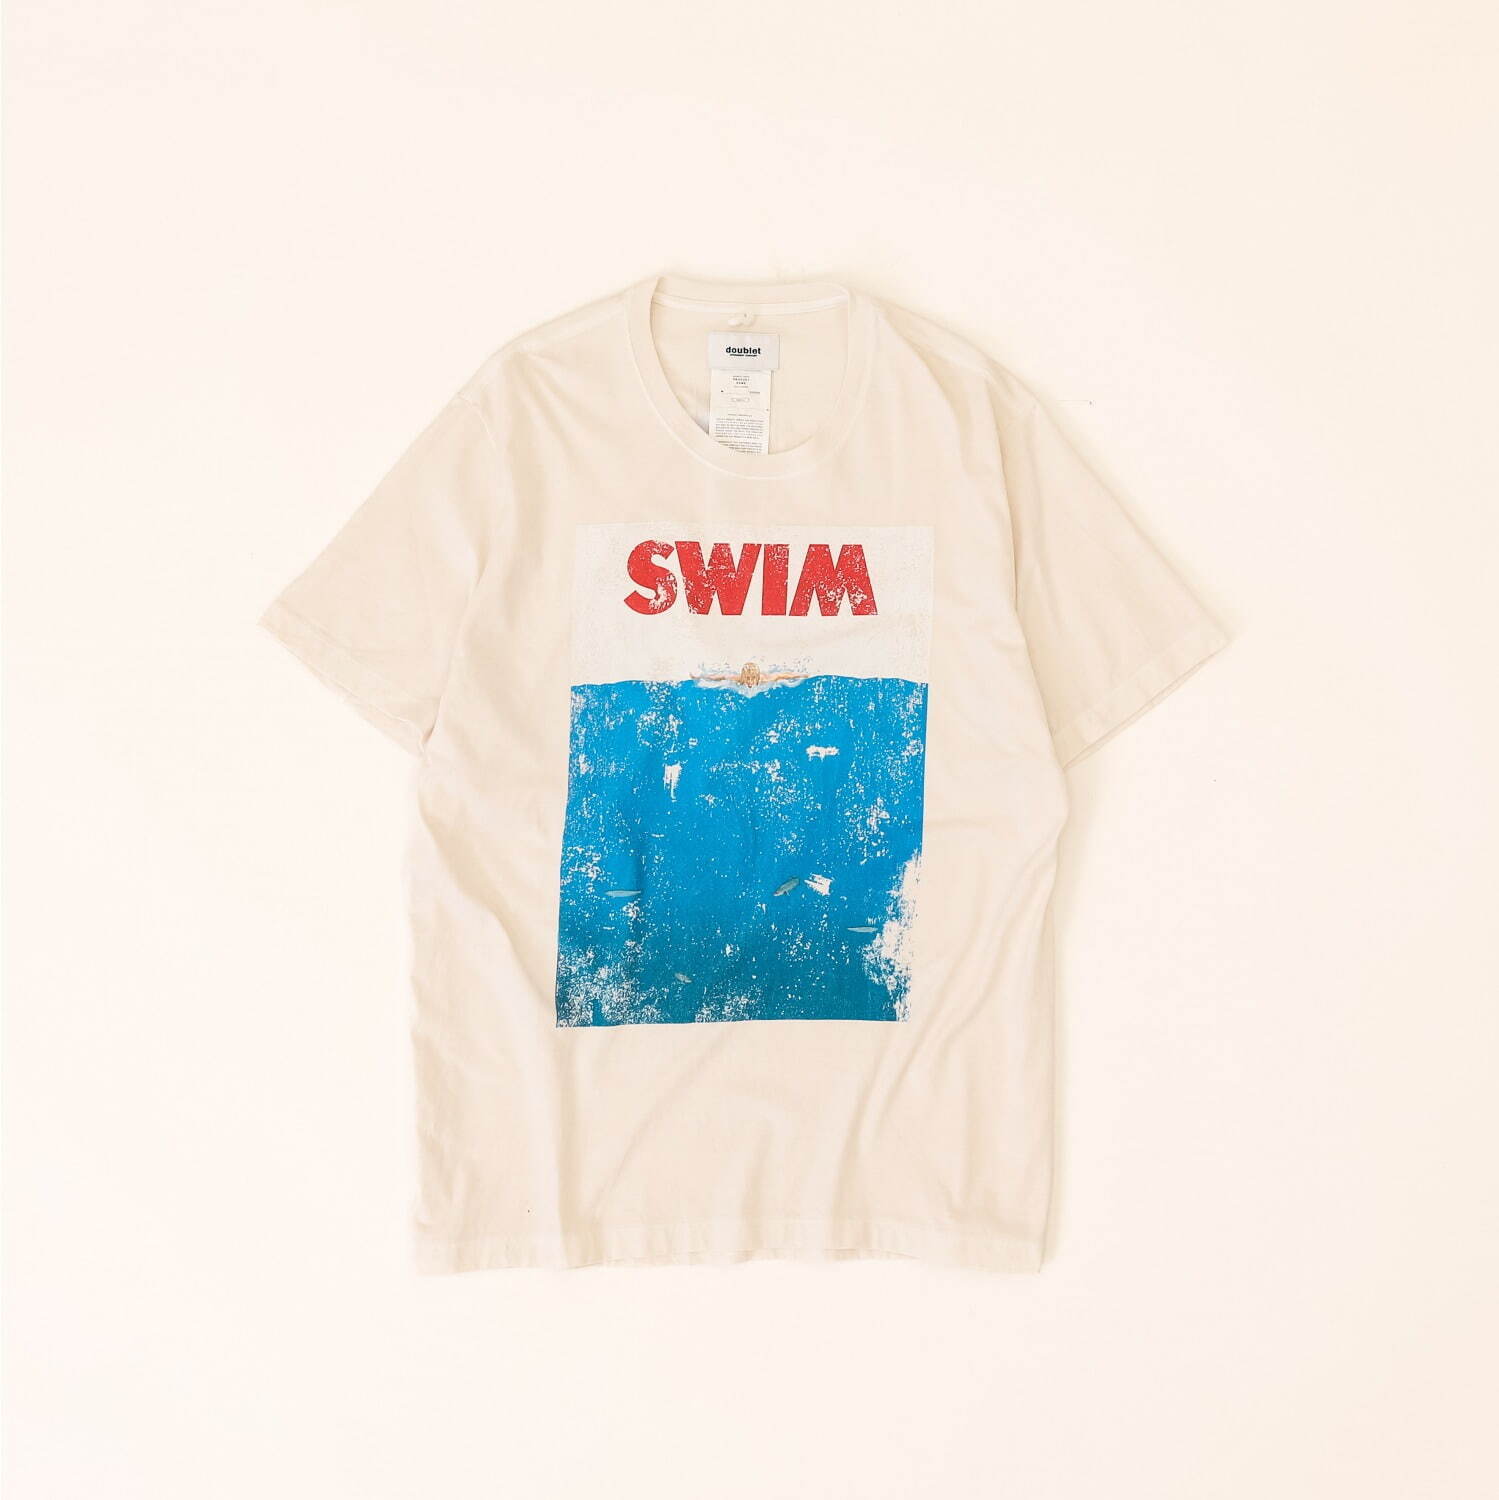 「サメ」Tシャツ 15,400円